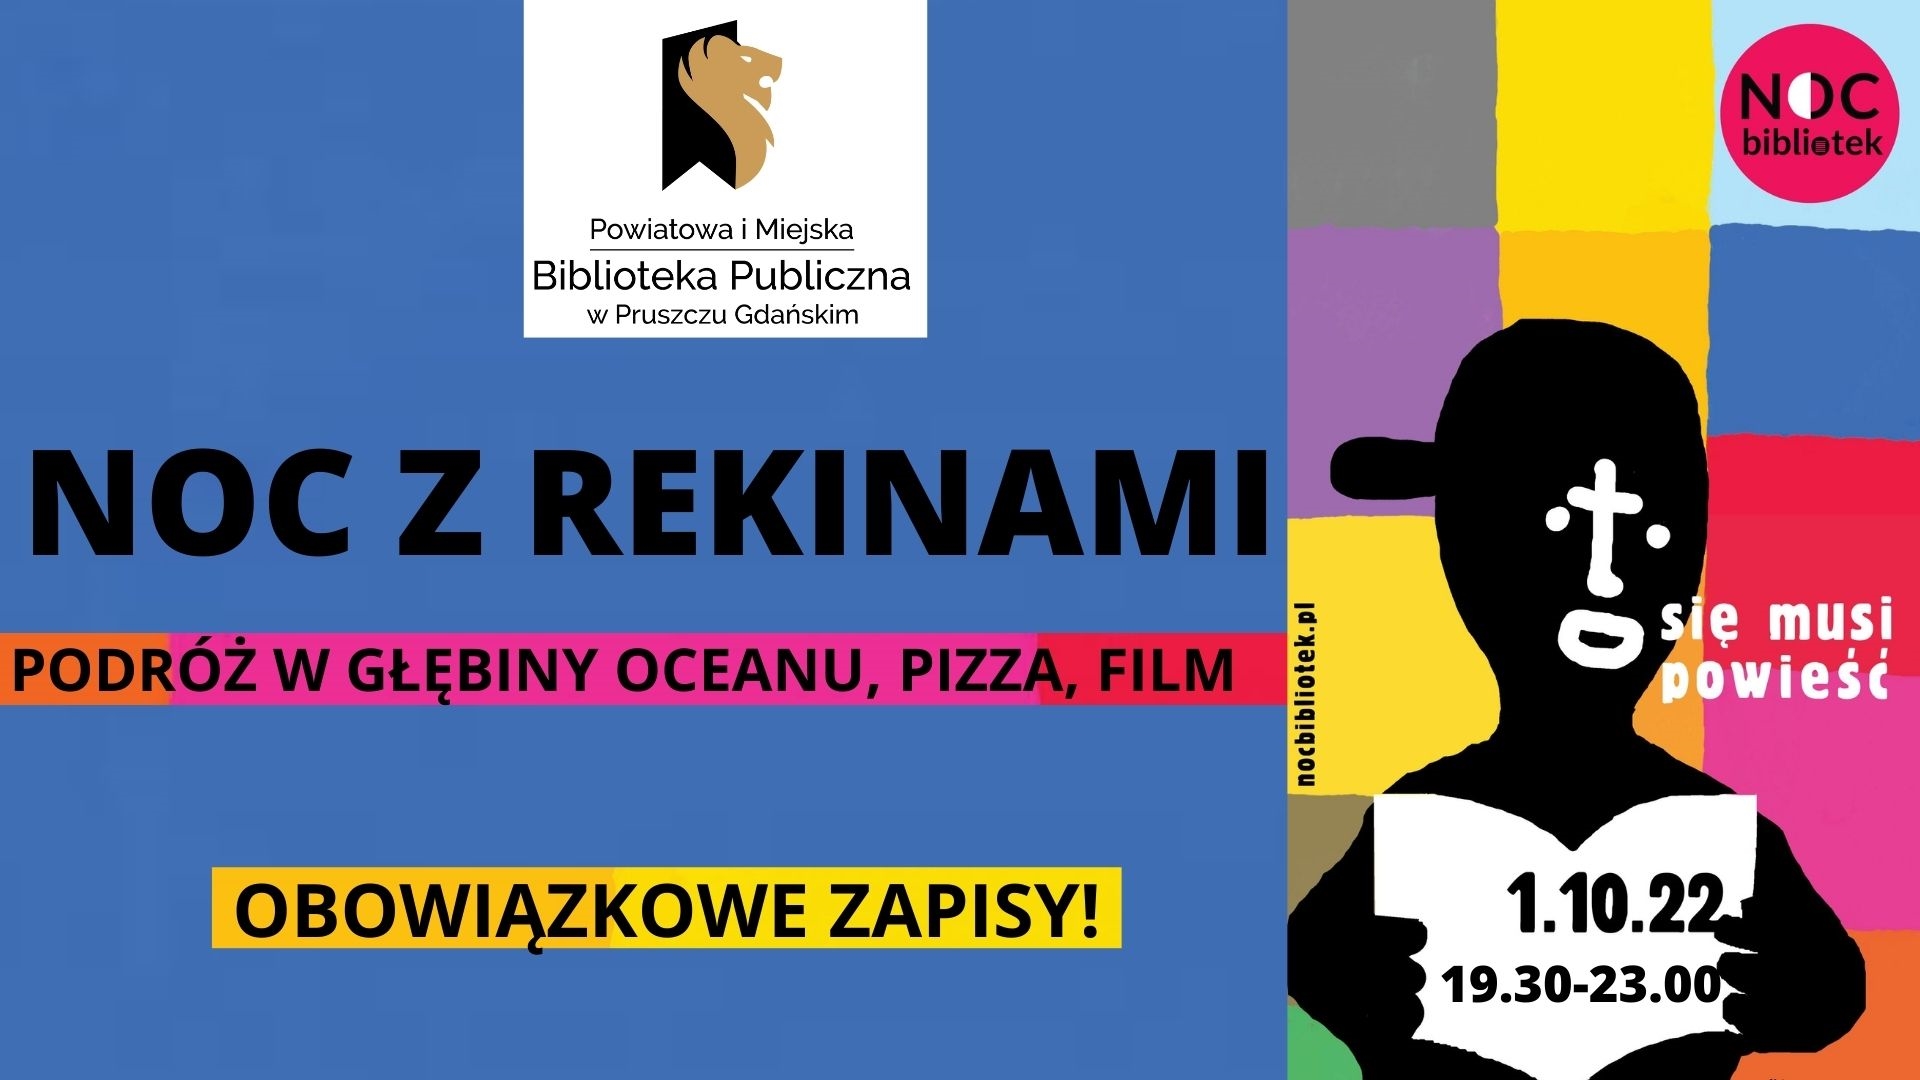 Na niebieskim tle znajduje się logo Powiatowej i Miejskiej Biblioteki Publicznej w Pruszczu Gdańskim. Poniżej znajdują się informacje: Noc z rekinami. Podróż w głębiny oceanu, pizza, film. Obowiązkowe zapisy! Po prawej stronie Znajduje się grafika przedstawiająca czarną postać trzymającą otwartą książkę na kolorowym tle. Jest to plakat promujący Noc Bibliotek.